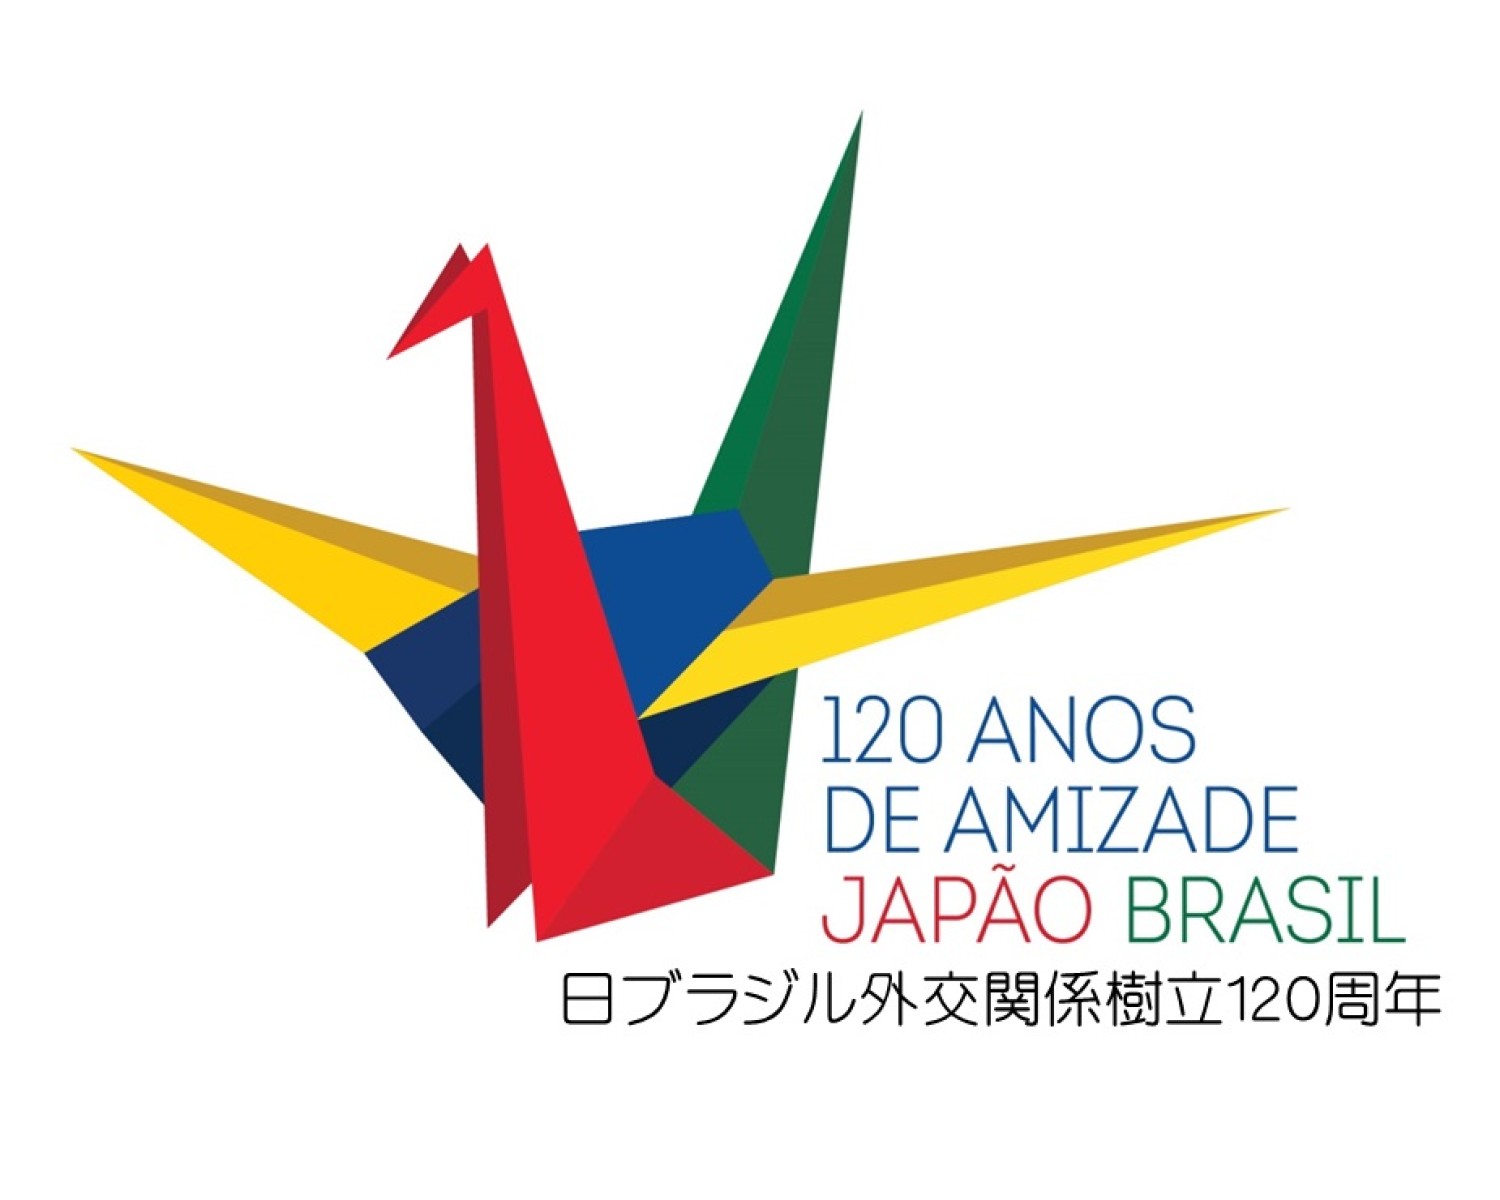 Img: Akimatsuri está na programação dos 120 anos do Tratado Brasil e Japão